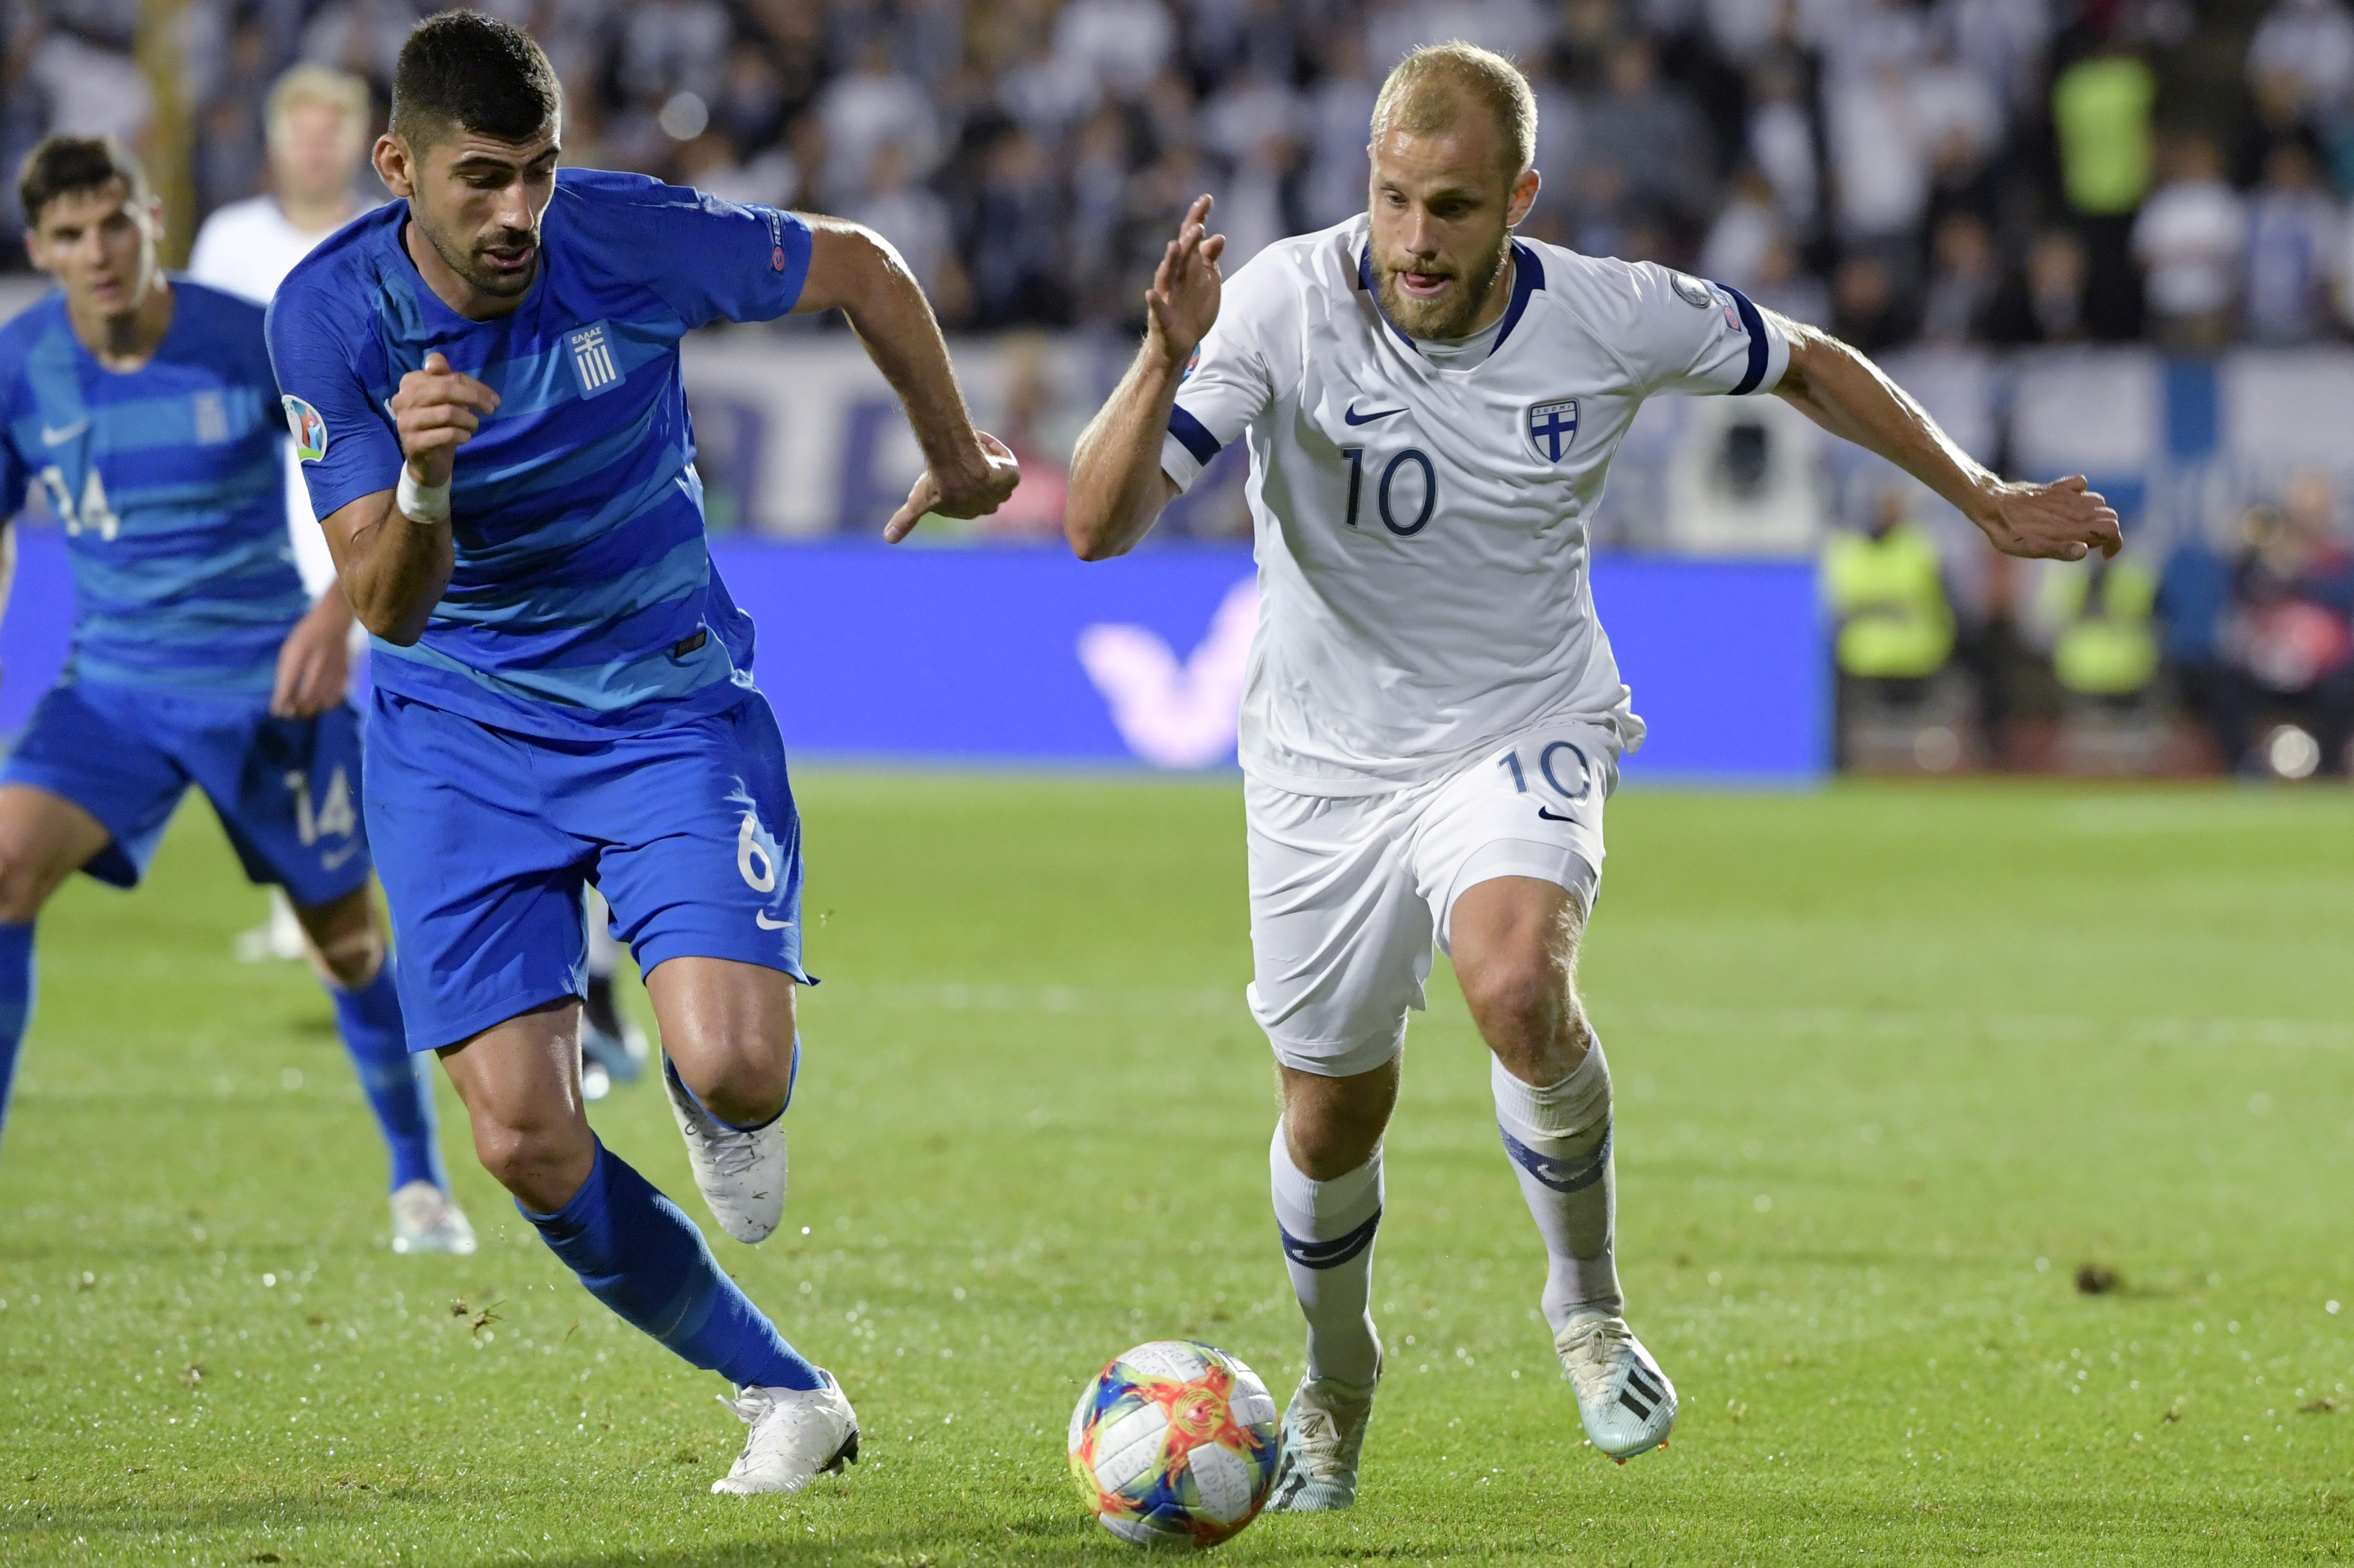 Φινλανδία – Ελλάδα 1-0 ΤΕΛΙΚΟ: Εύκολη ήττα στο Τάμπερε! Η εθνική αποχαιρετά το Euro 2020